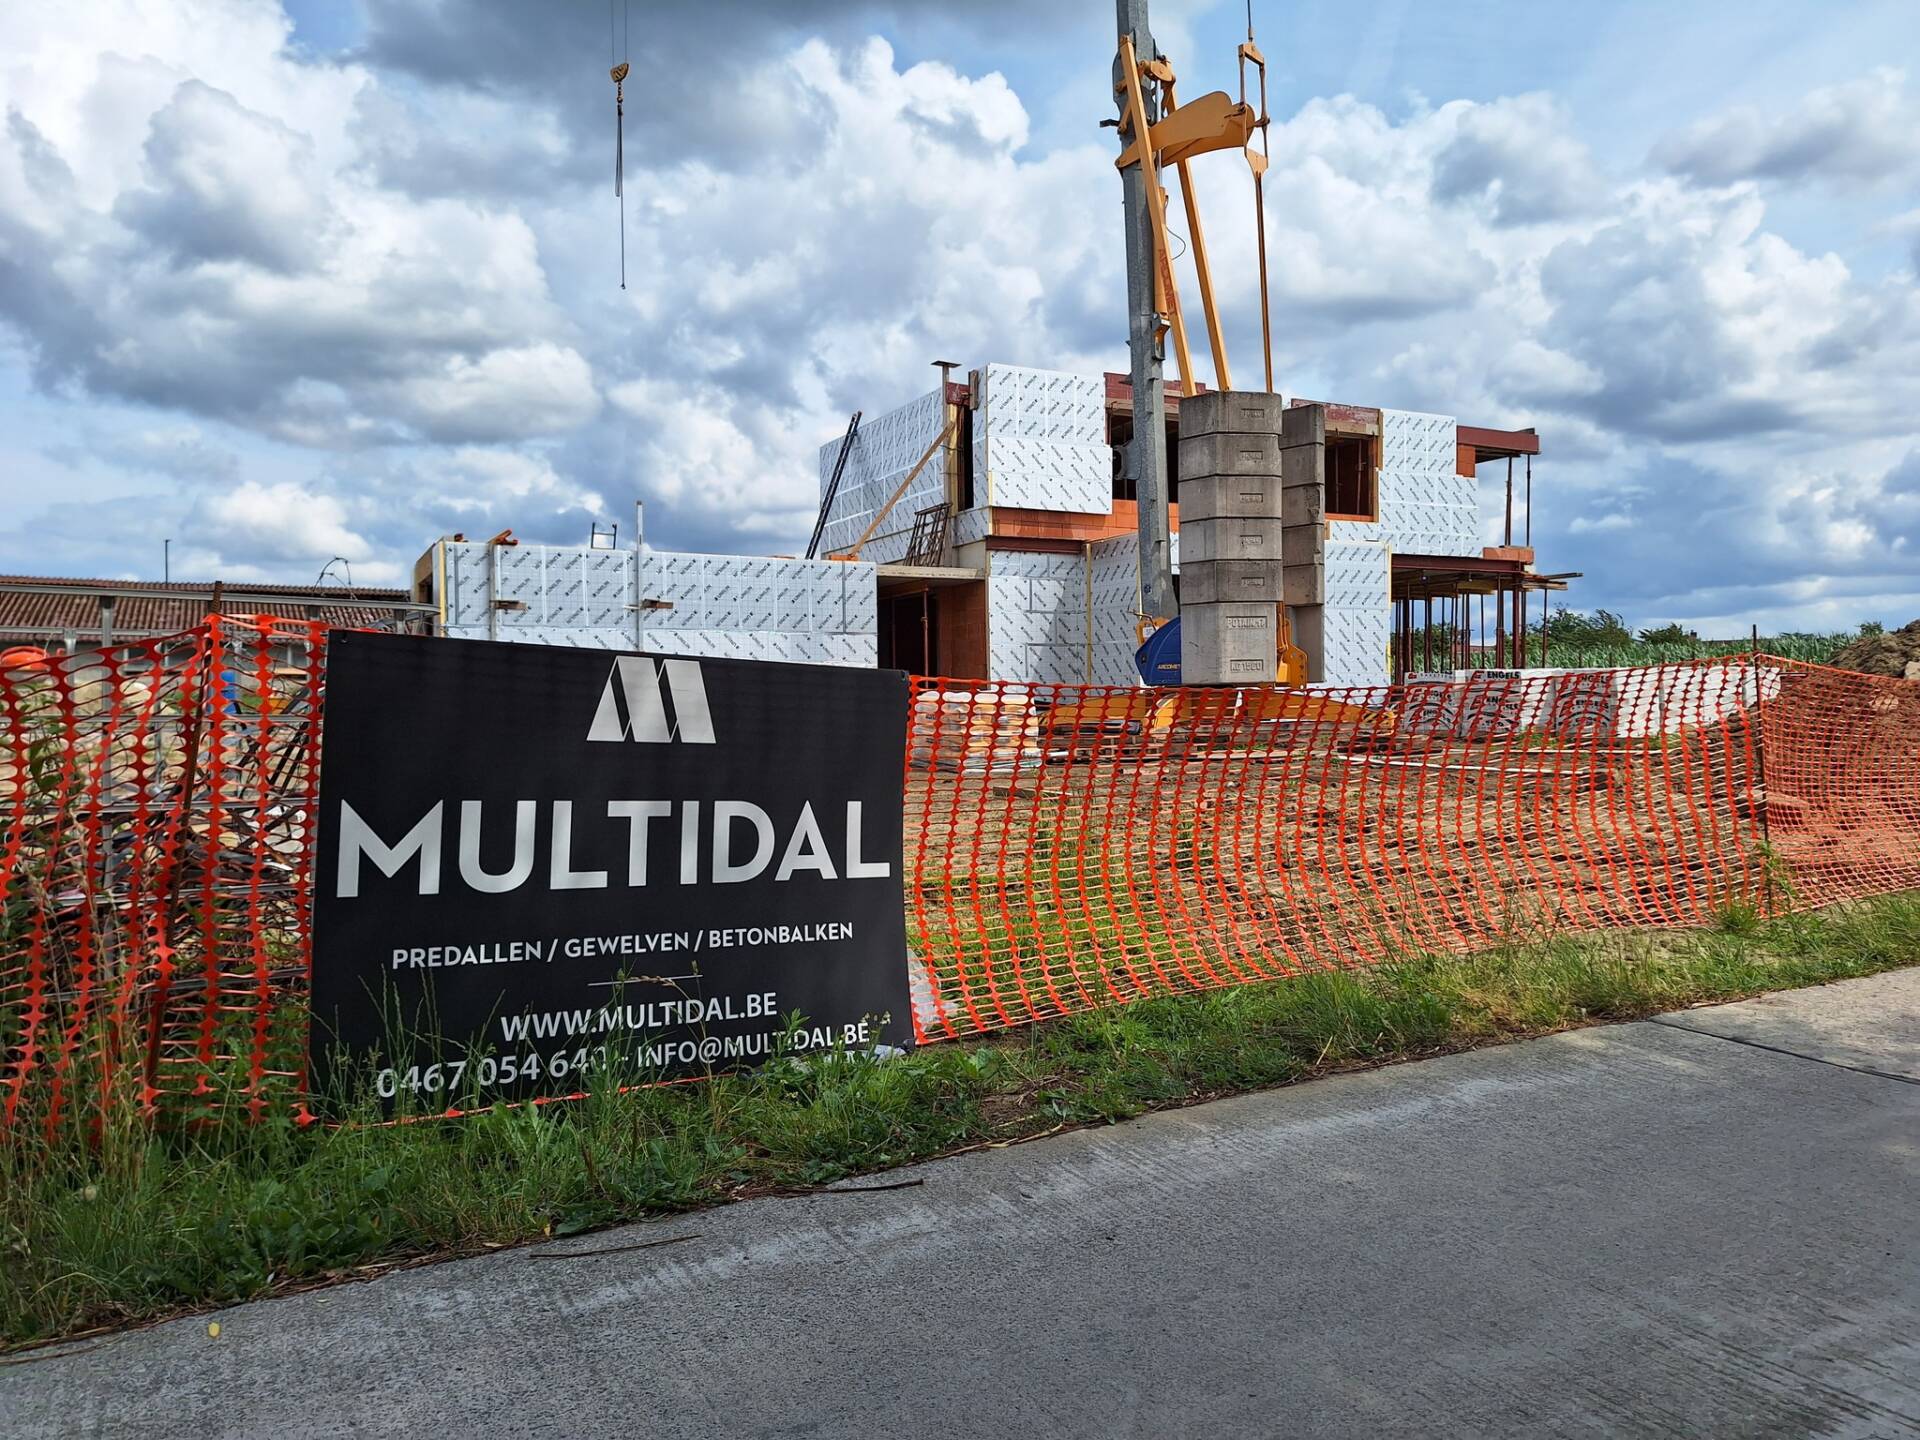 Multidal is een dynamisch bedrijf in de bouwsector